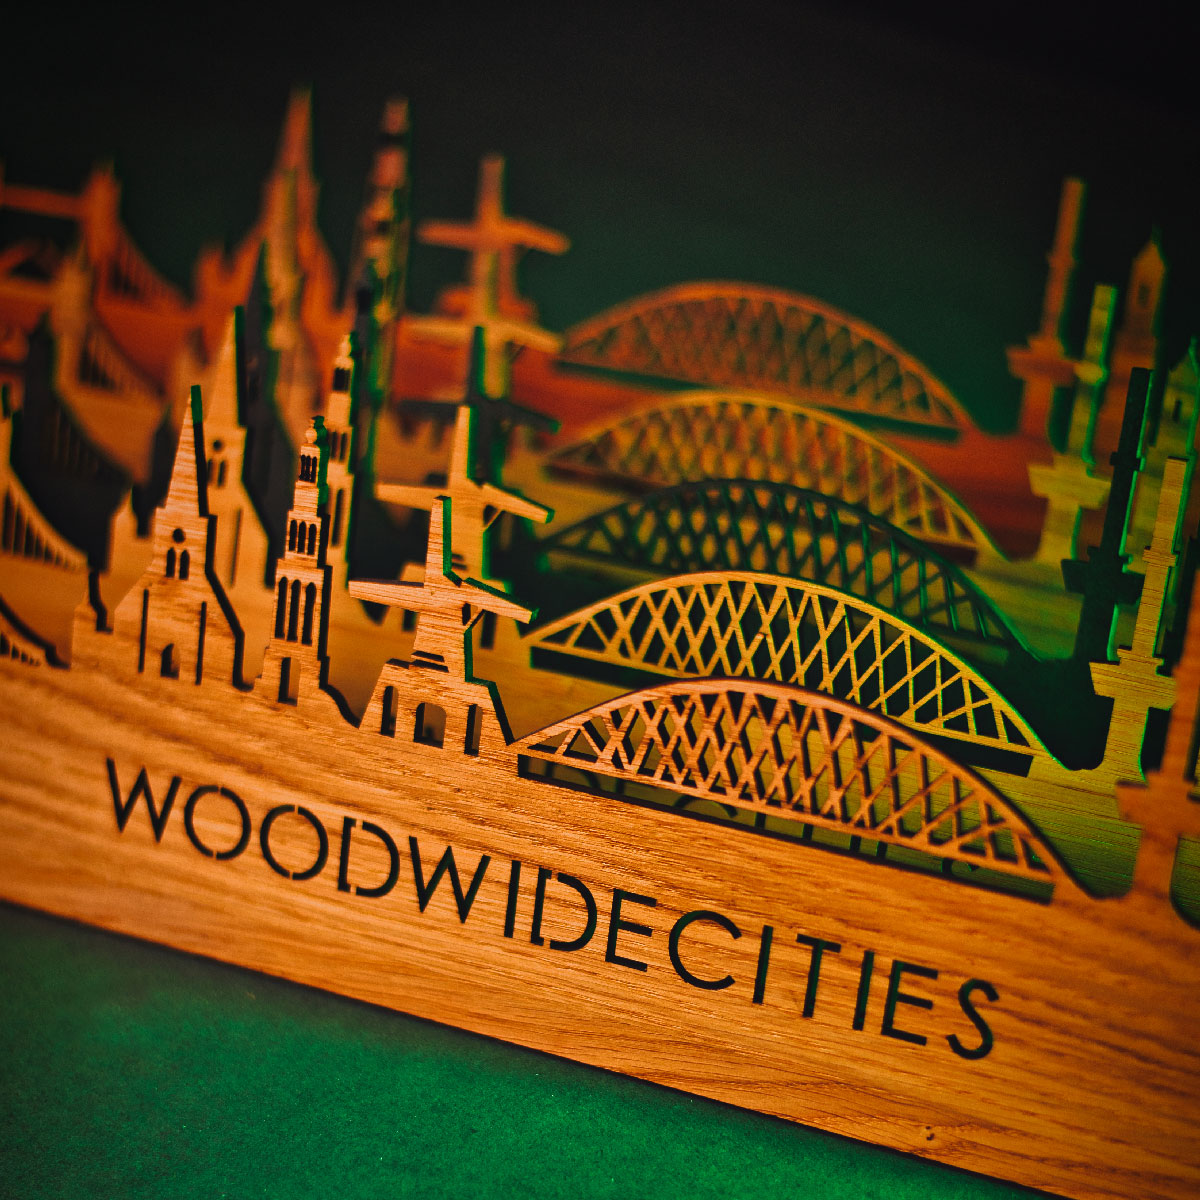 Skyline Klok Enkhuizen Black Zwart houten cadeau wanddecoratie relatiegeschenk van WoodWideCities